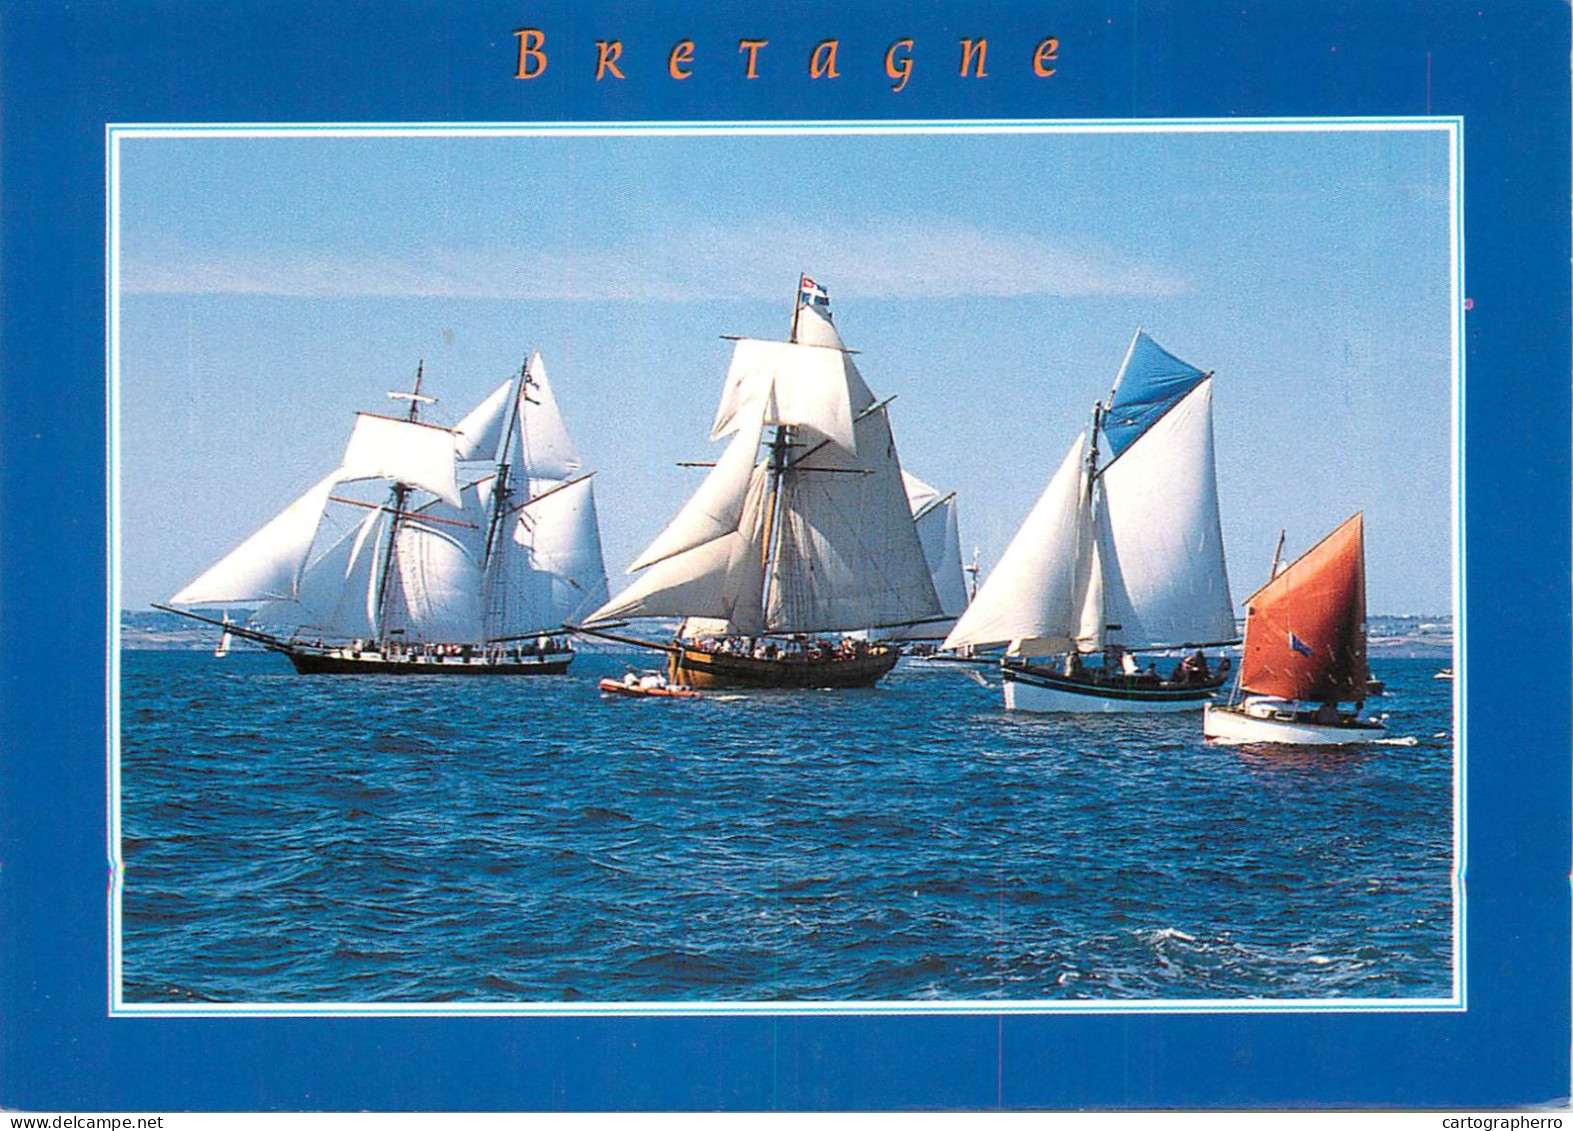 Navigation Sailing Vessels & Boats Themed Postcard Bretagne Sailing Boat Bygone Age - Segelboote